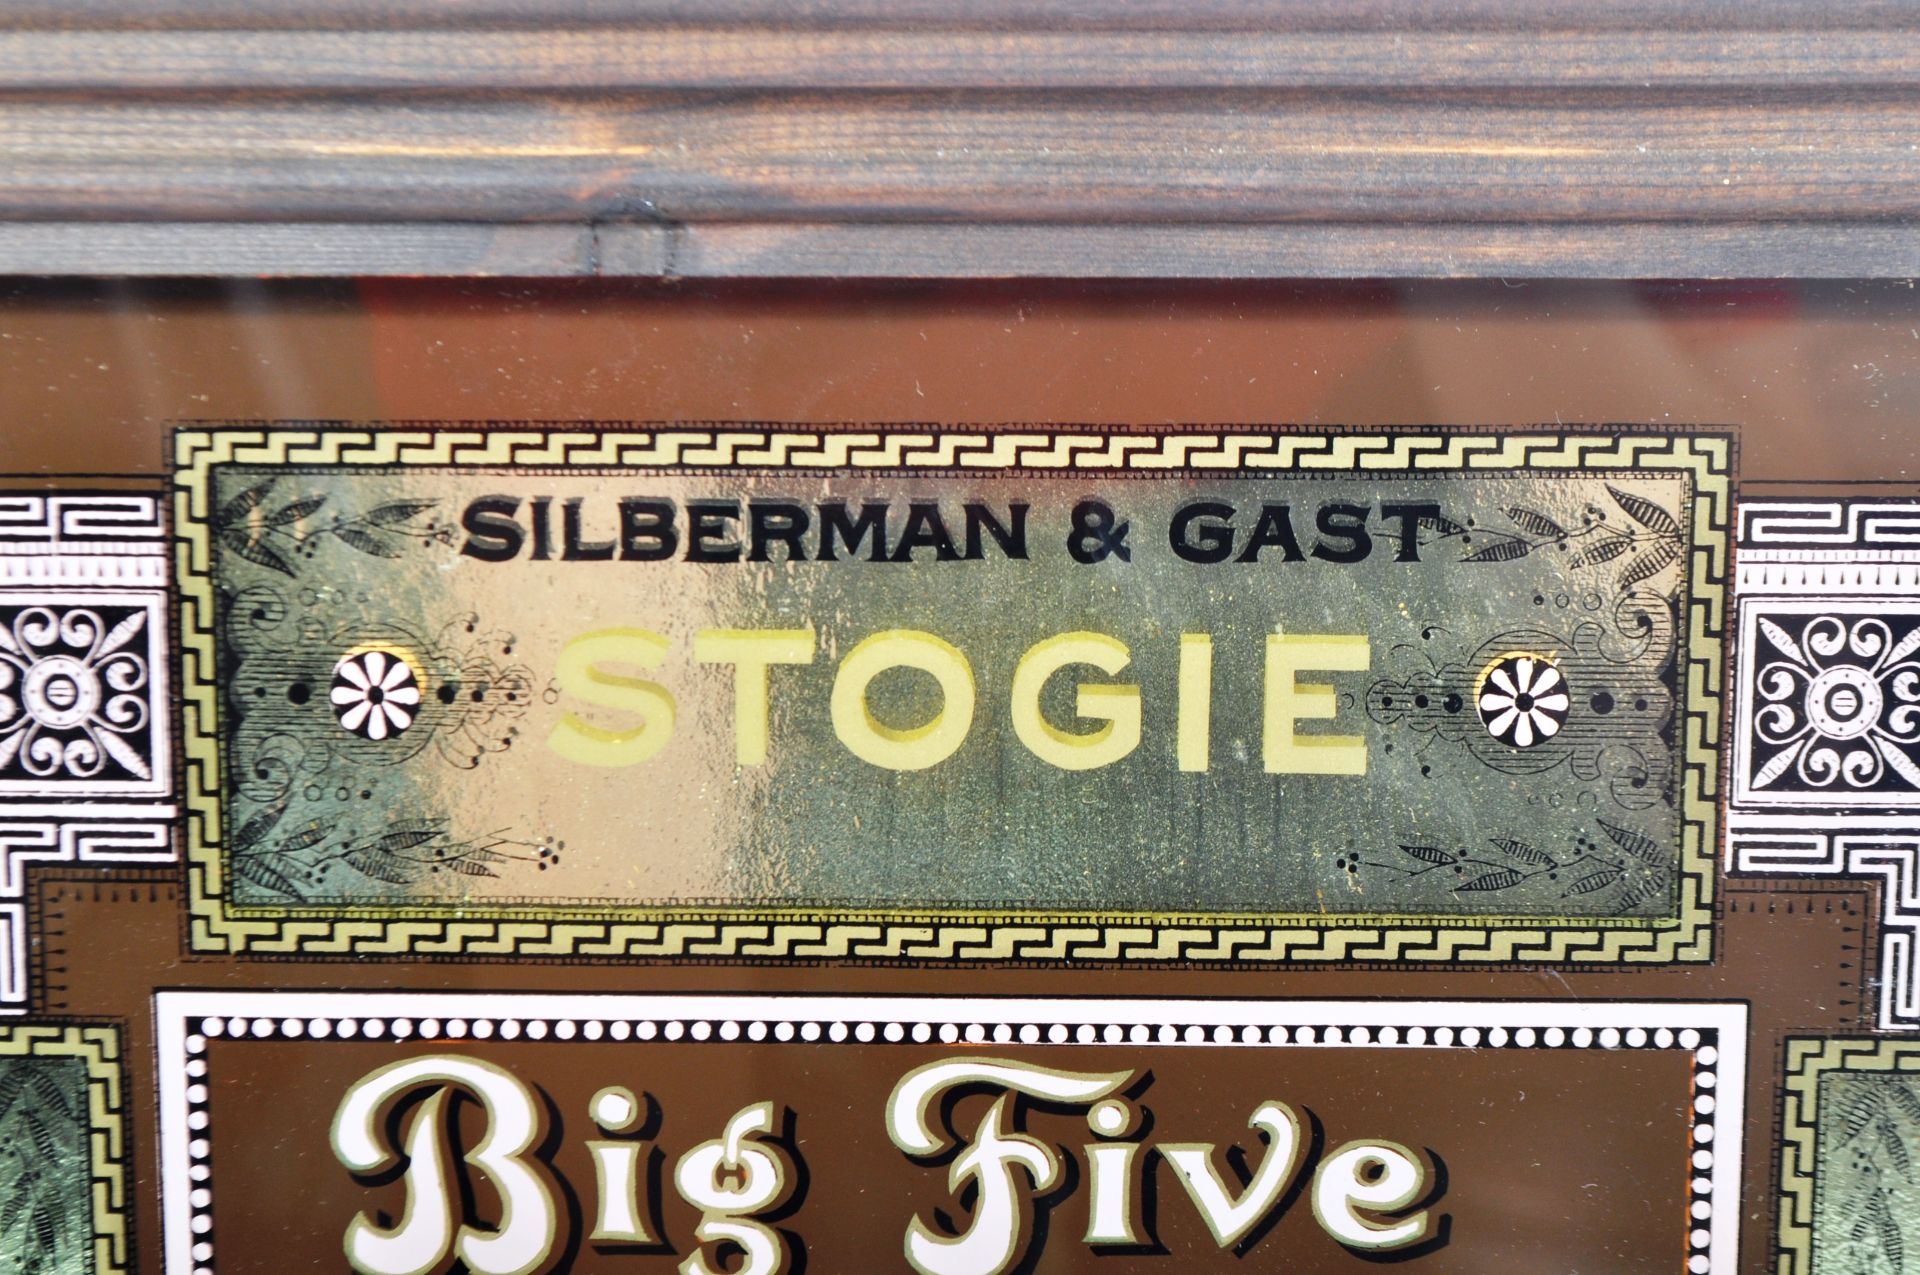 SILBERMAN & GAST - STOGIE - VINTAGE AMERICAN ADVERTISING MIRROR - Image 3 of 7